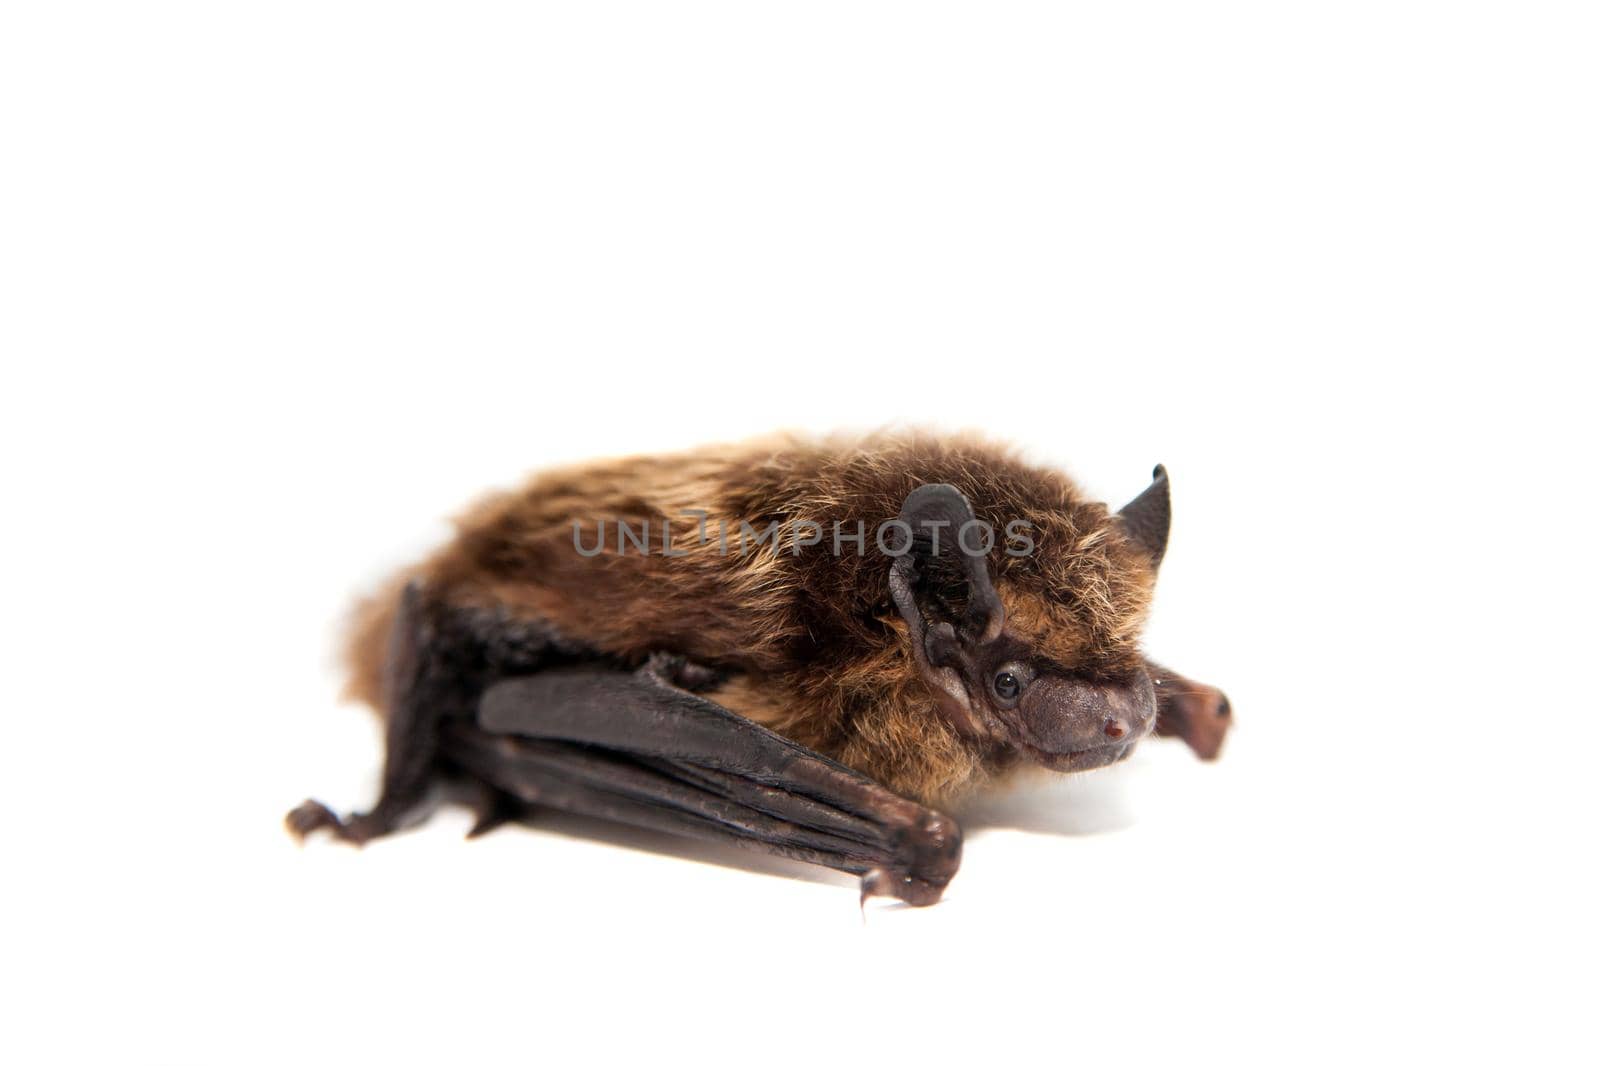 Northern bat, Eptesicus nilssonii, isolated on white.